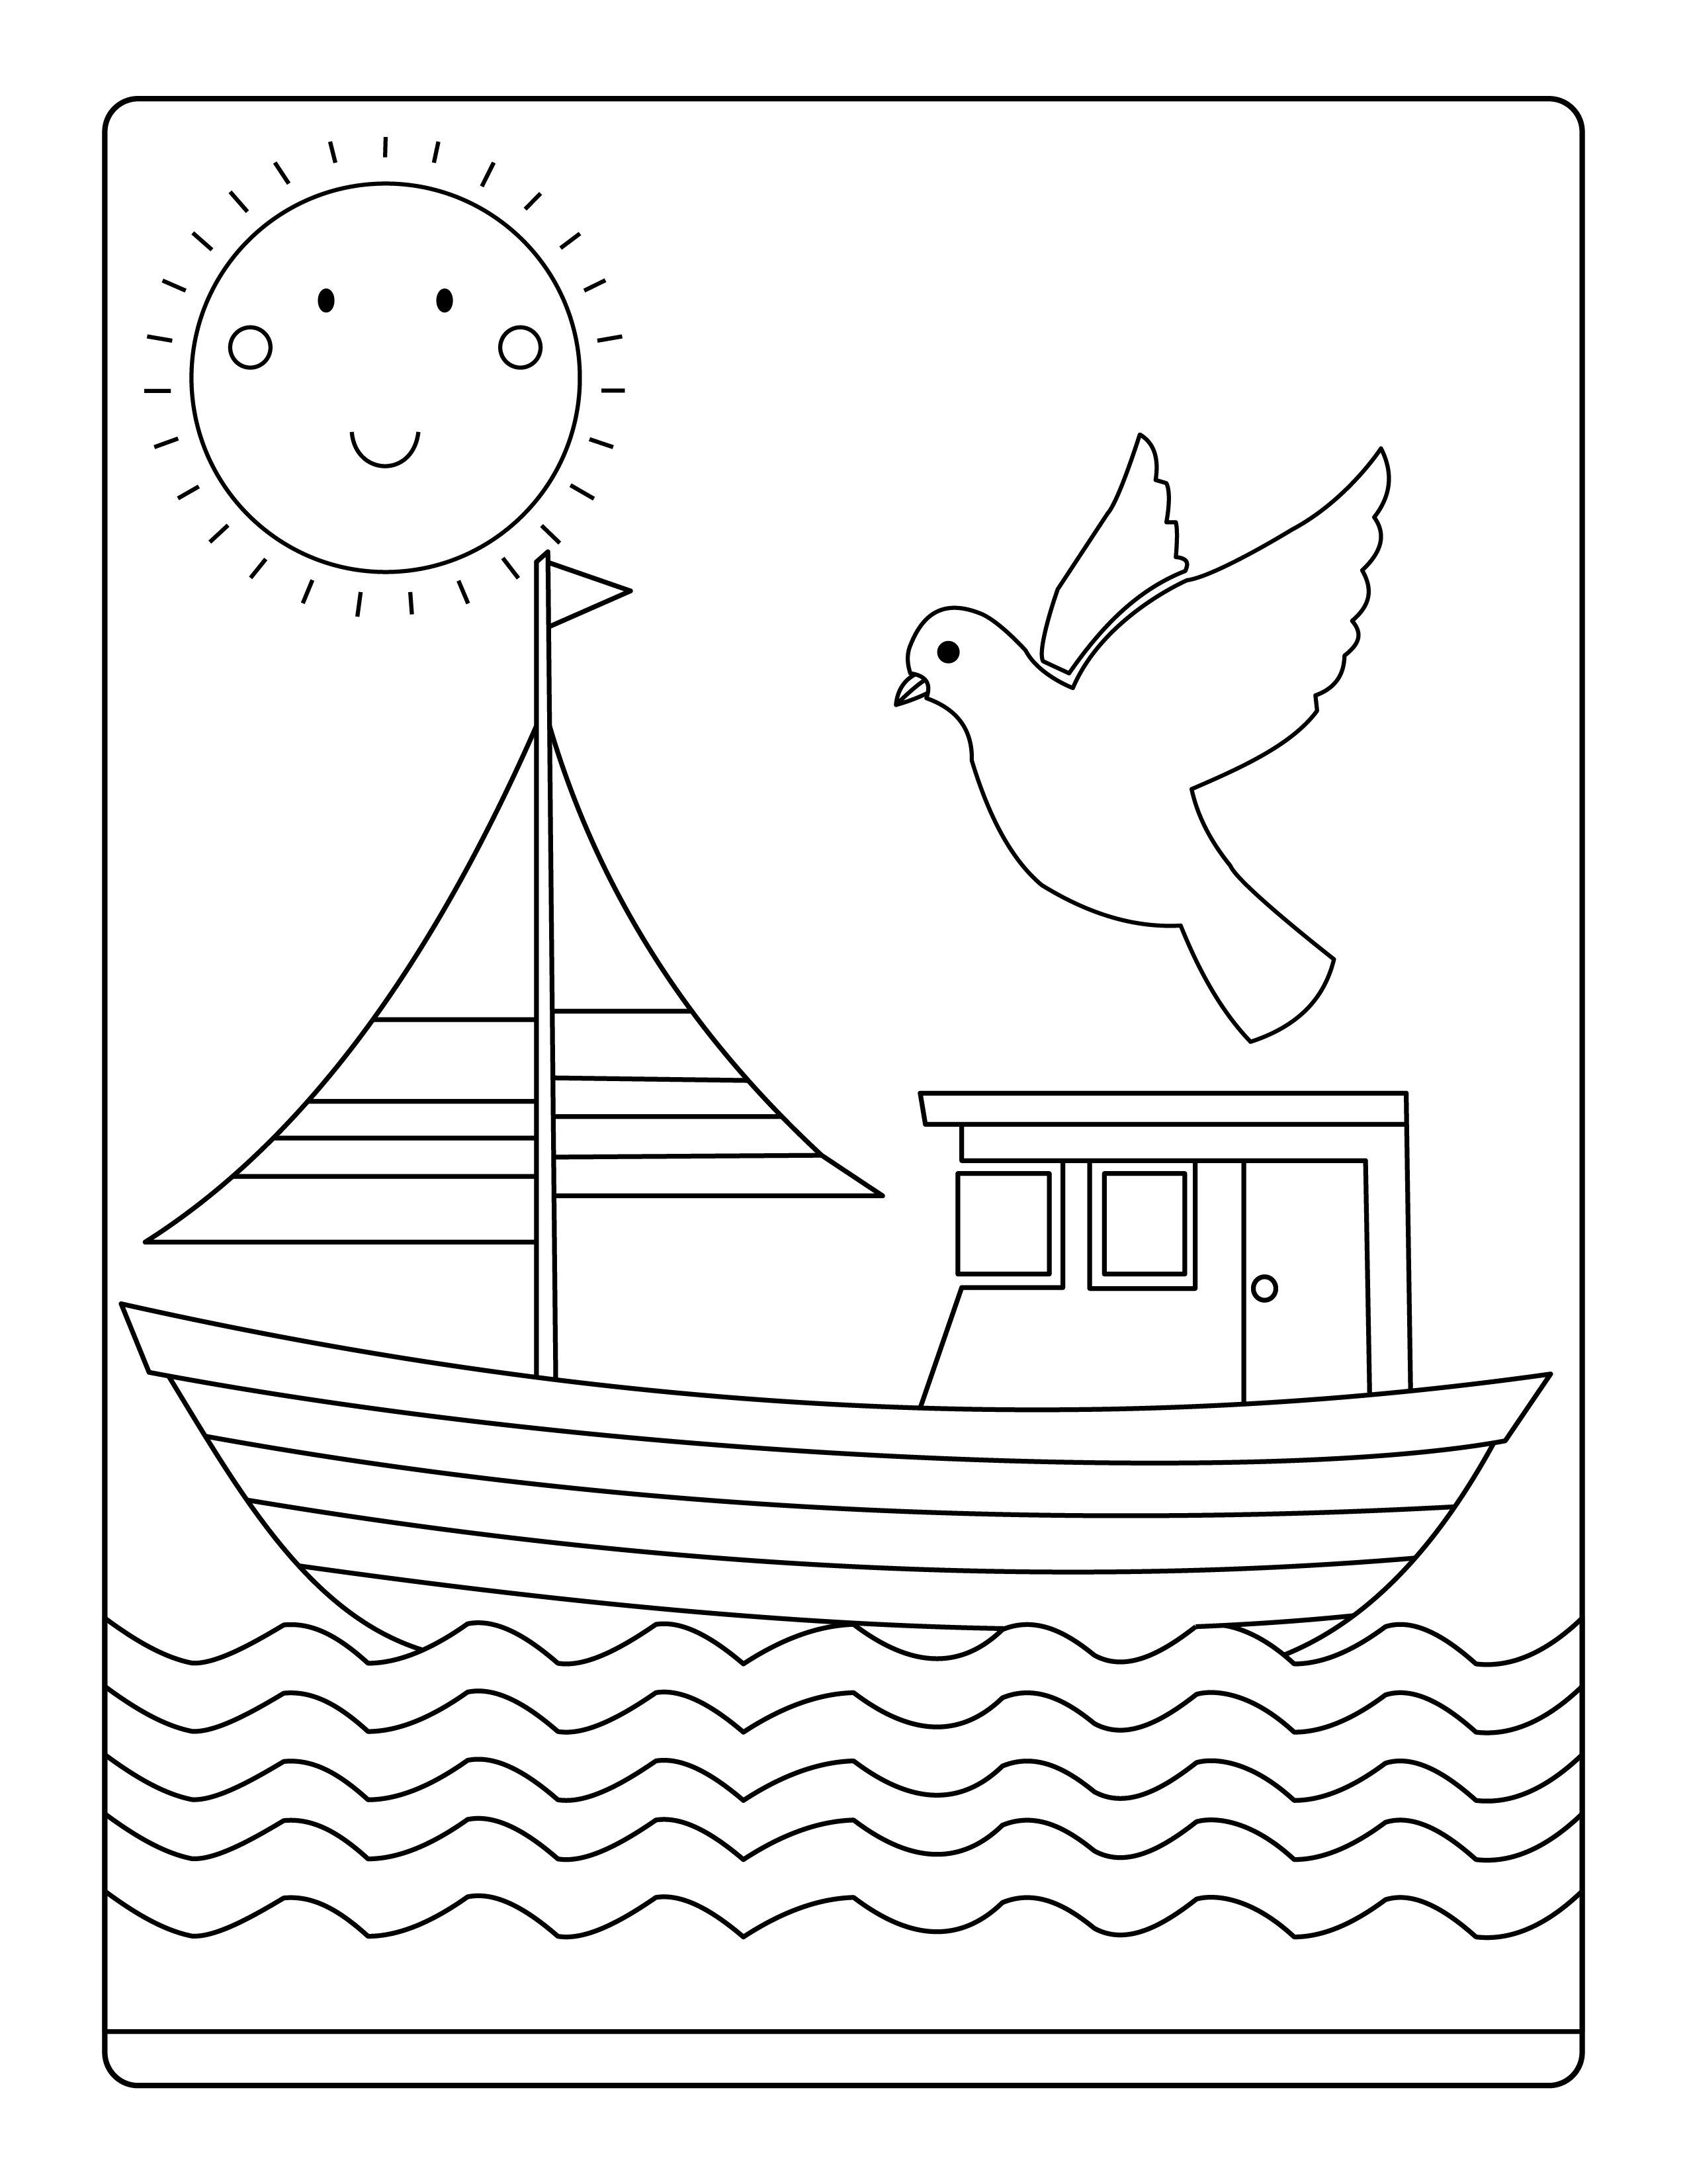 Раскраска корабль и голубь в солнечный день формата А4 в высоком качестве